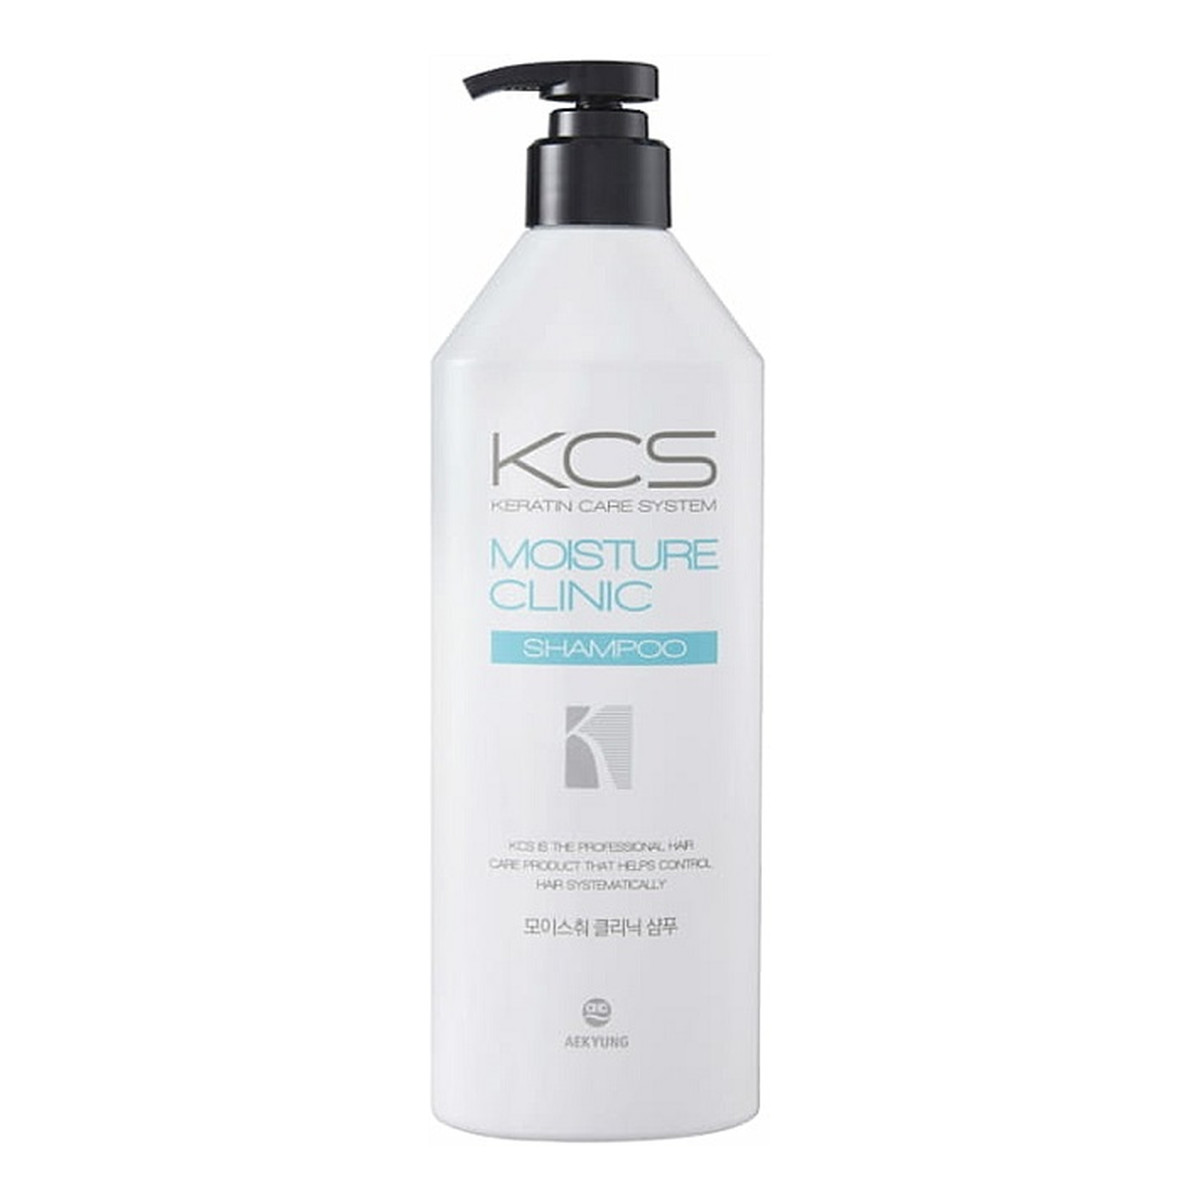 KCS Moisture clinic shampoo nawilżający szampon do włosów suchych i zniszczonych 600ml